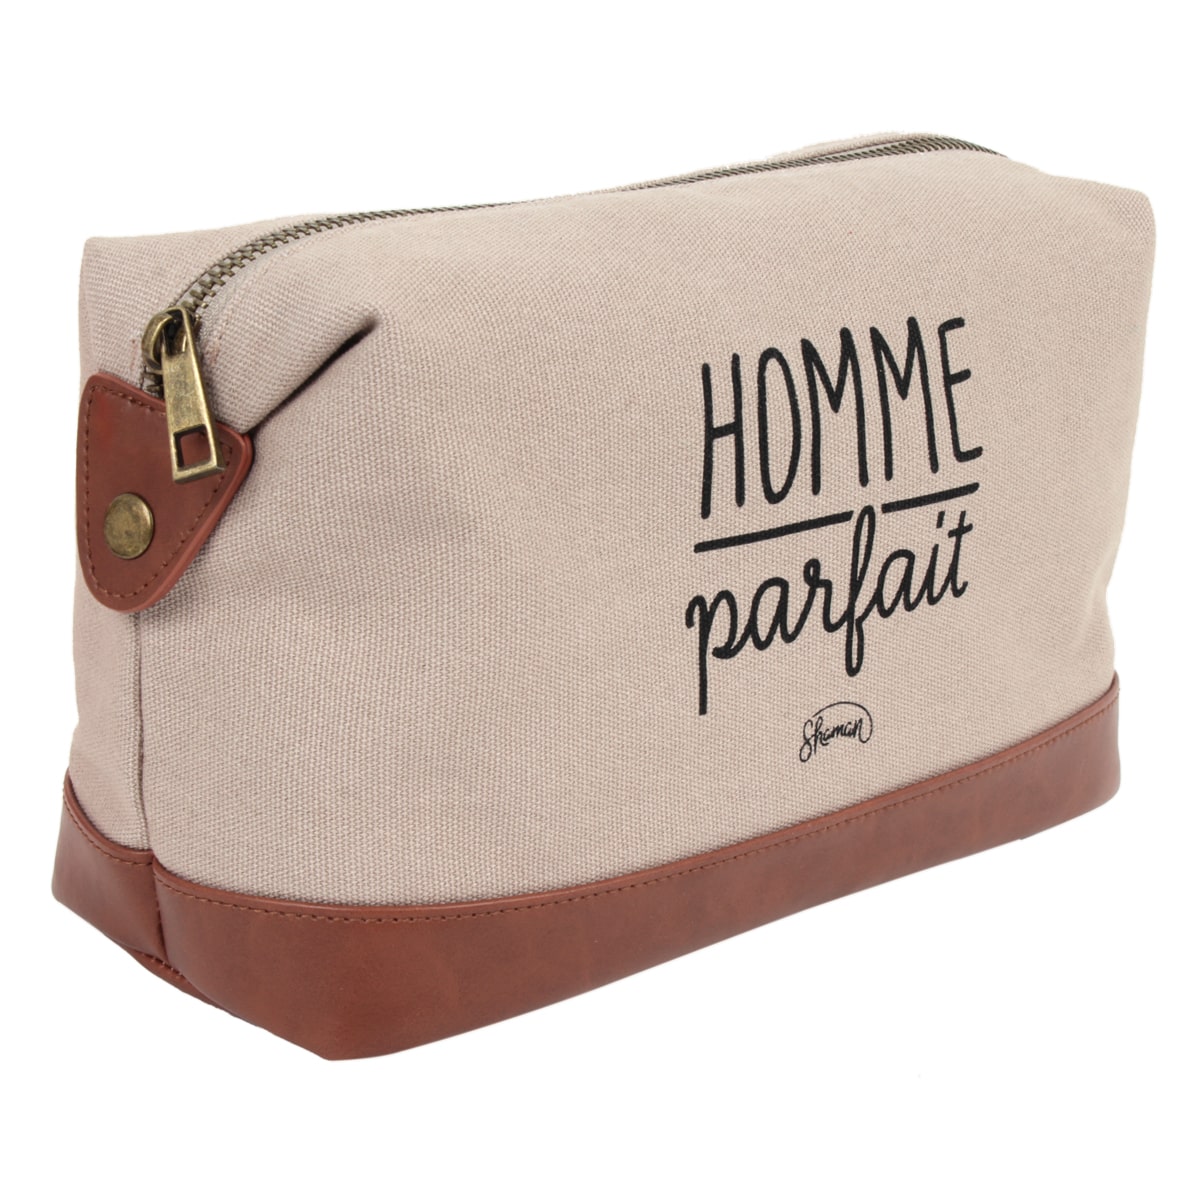 TROUSSE DE TOILETTE HOMME PARFAIT - La Chaise Longue